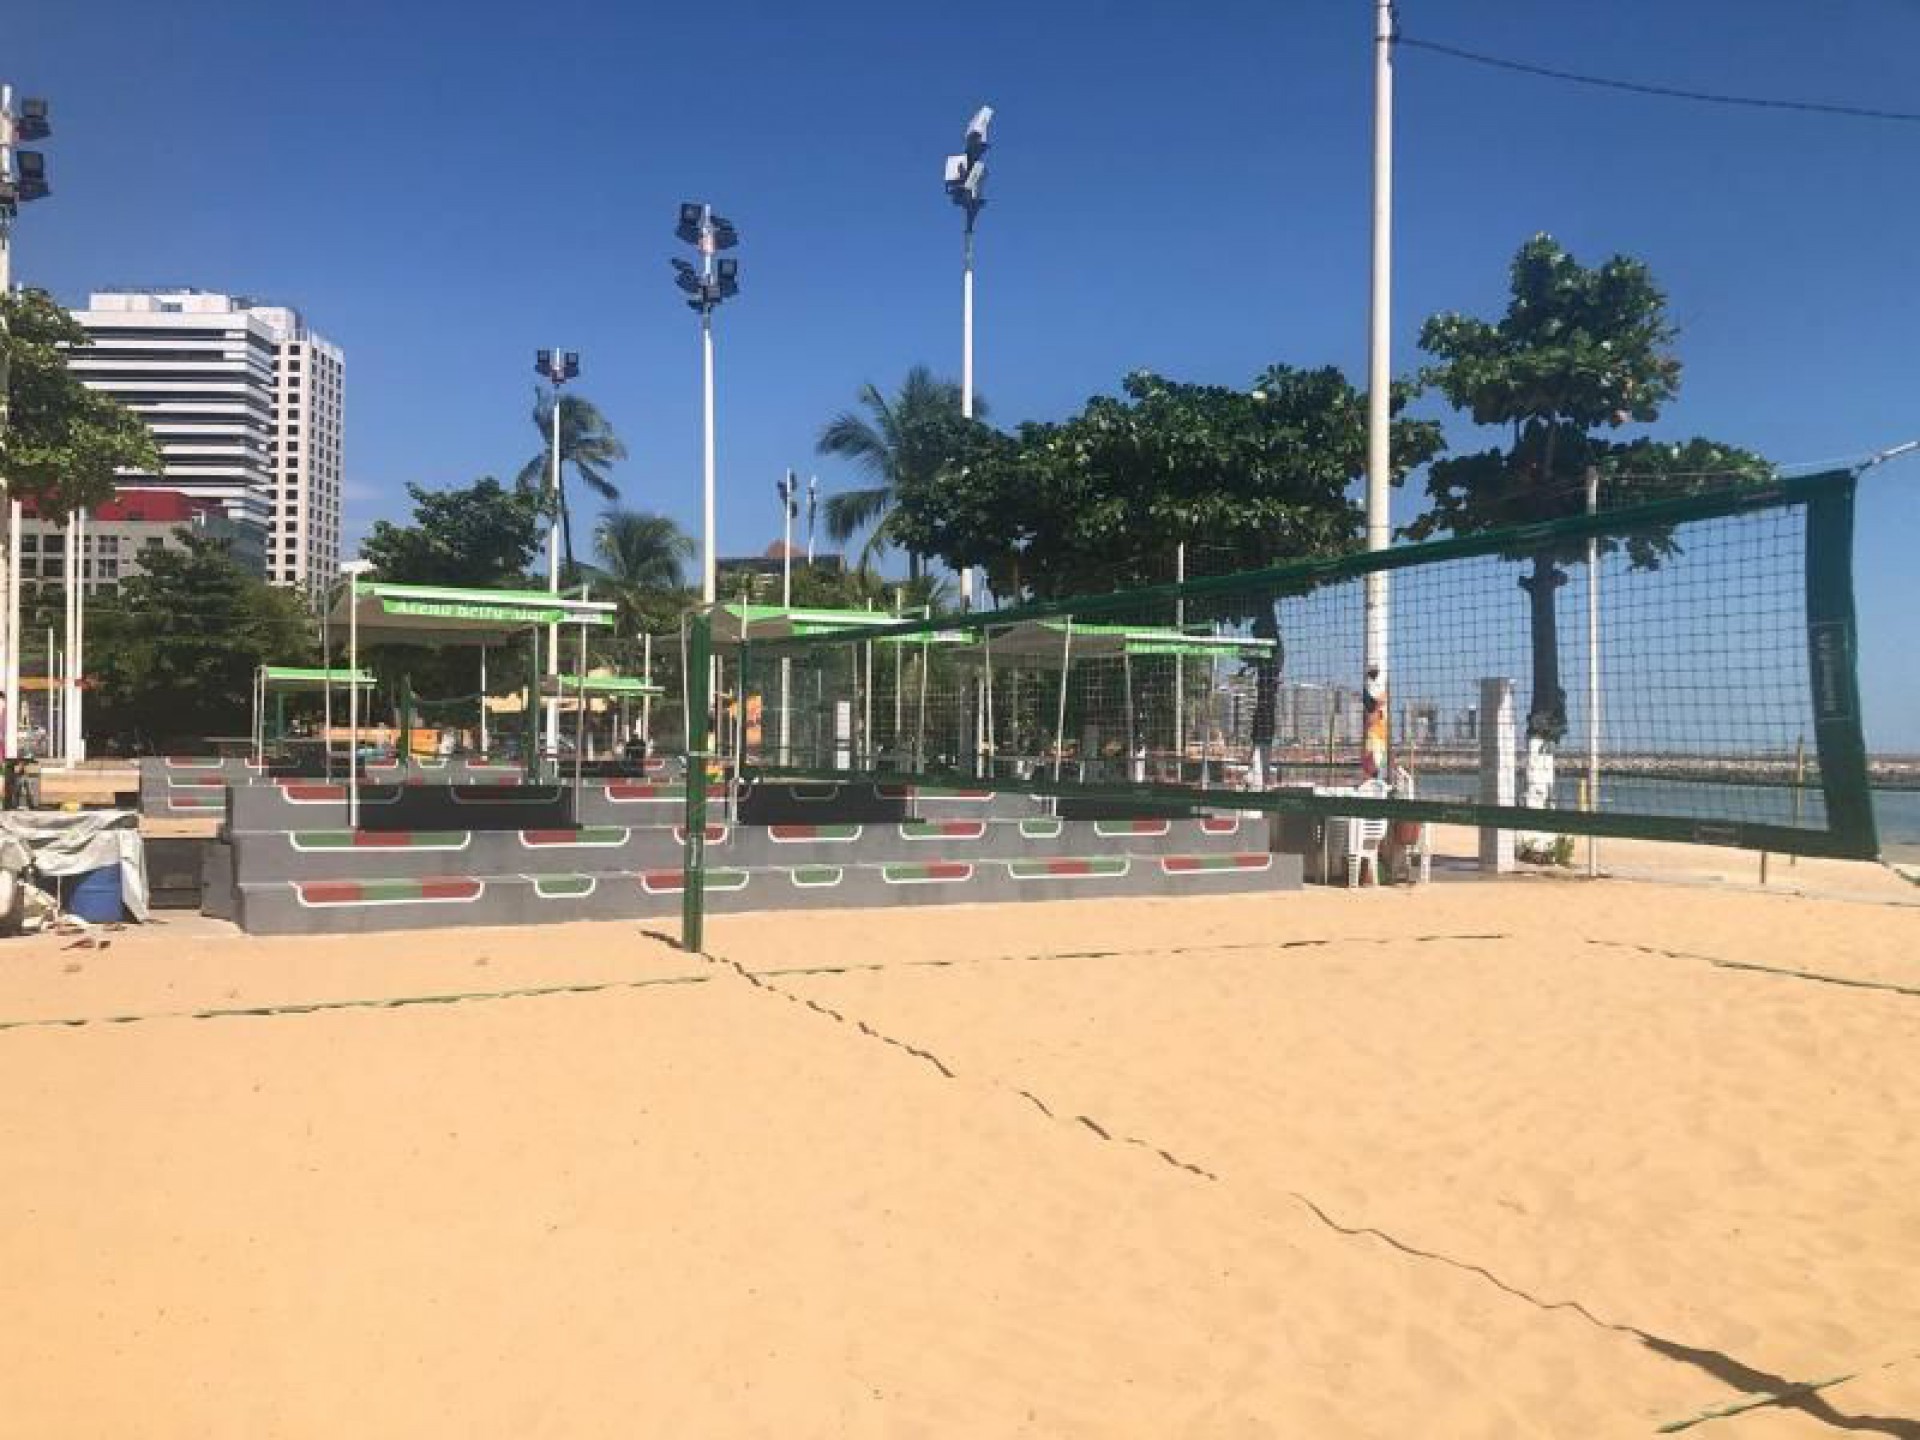 Unimed Ceará, com o objetivo de levar mais qualidade de vida às pessoas por meio da prática de atividade física, adotou o espaço esportivo que fica de frente ao Jardim Japonês